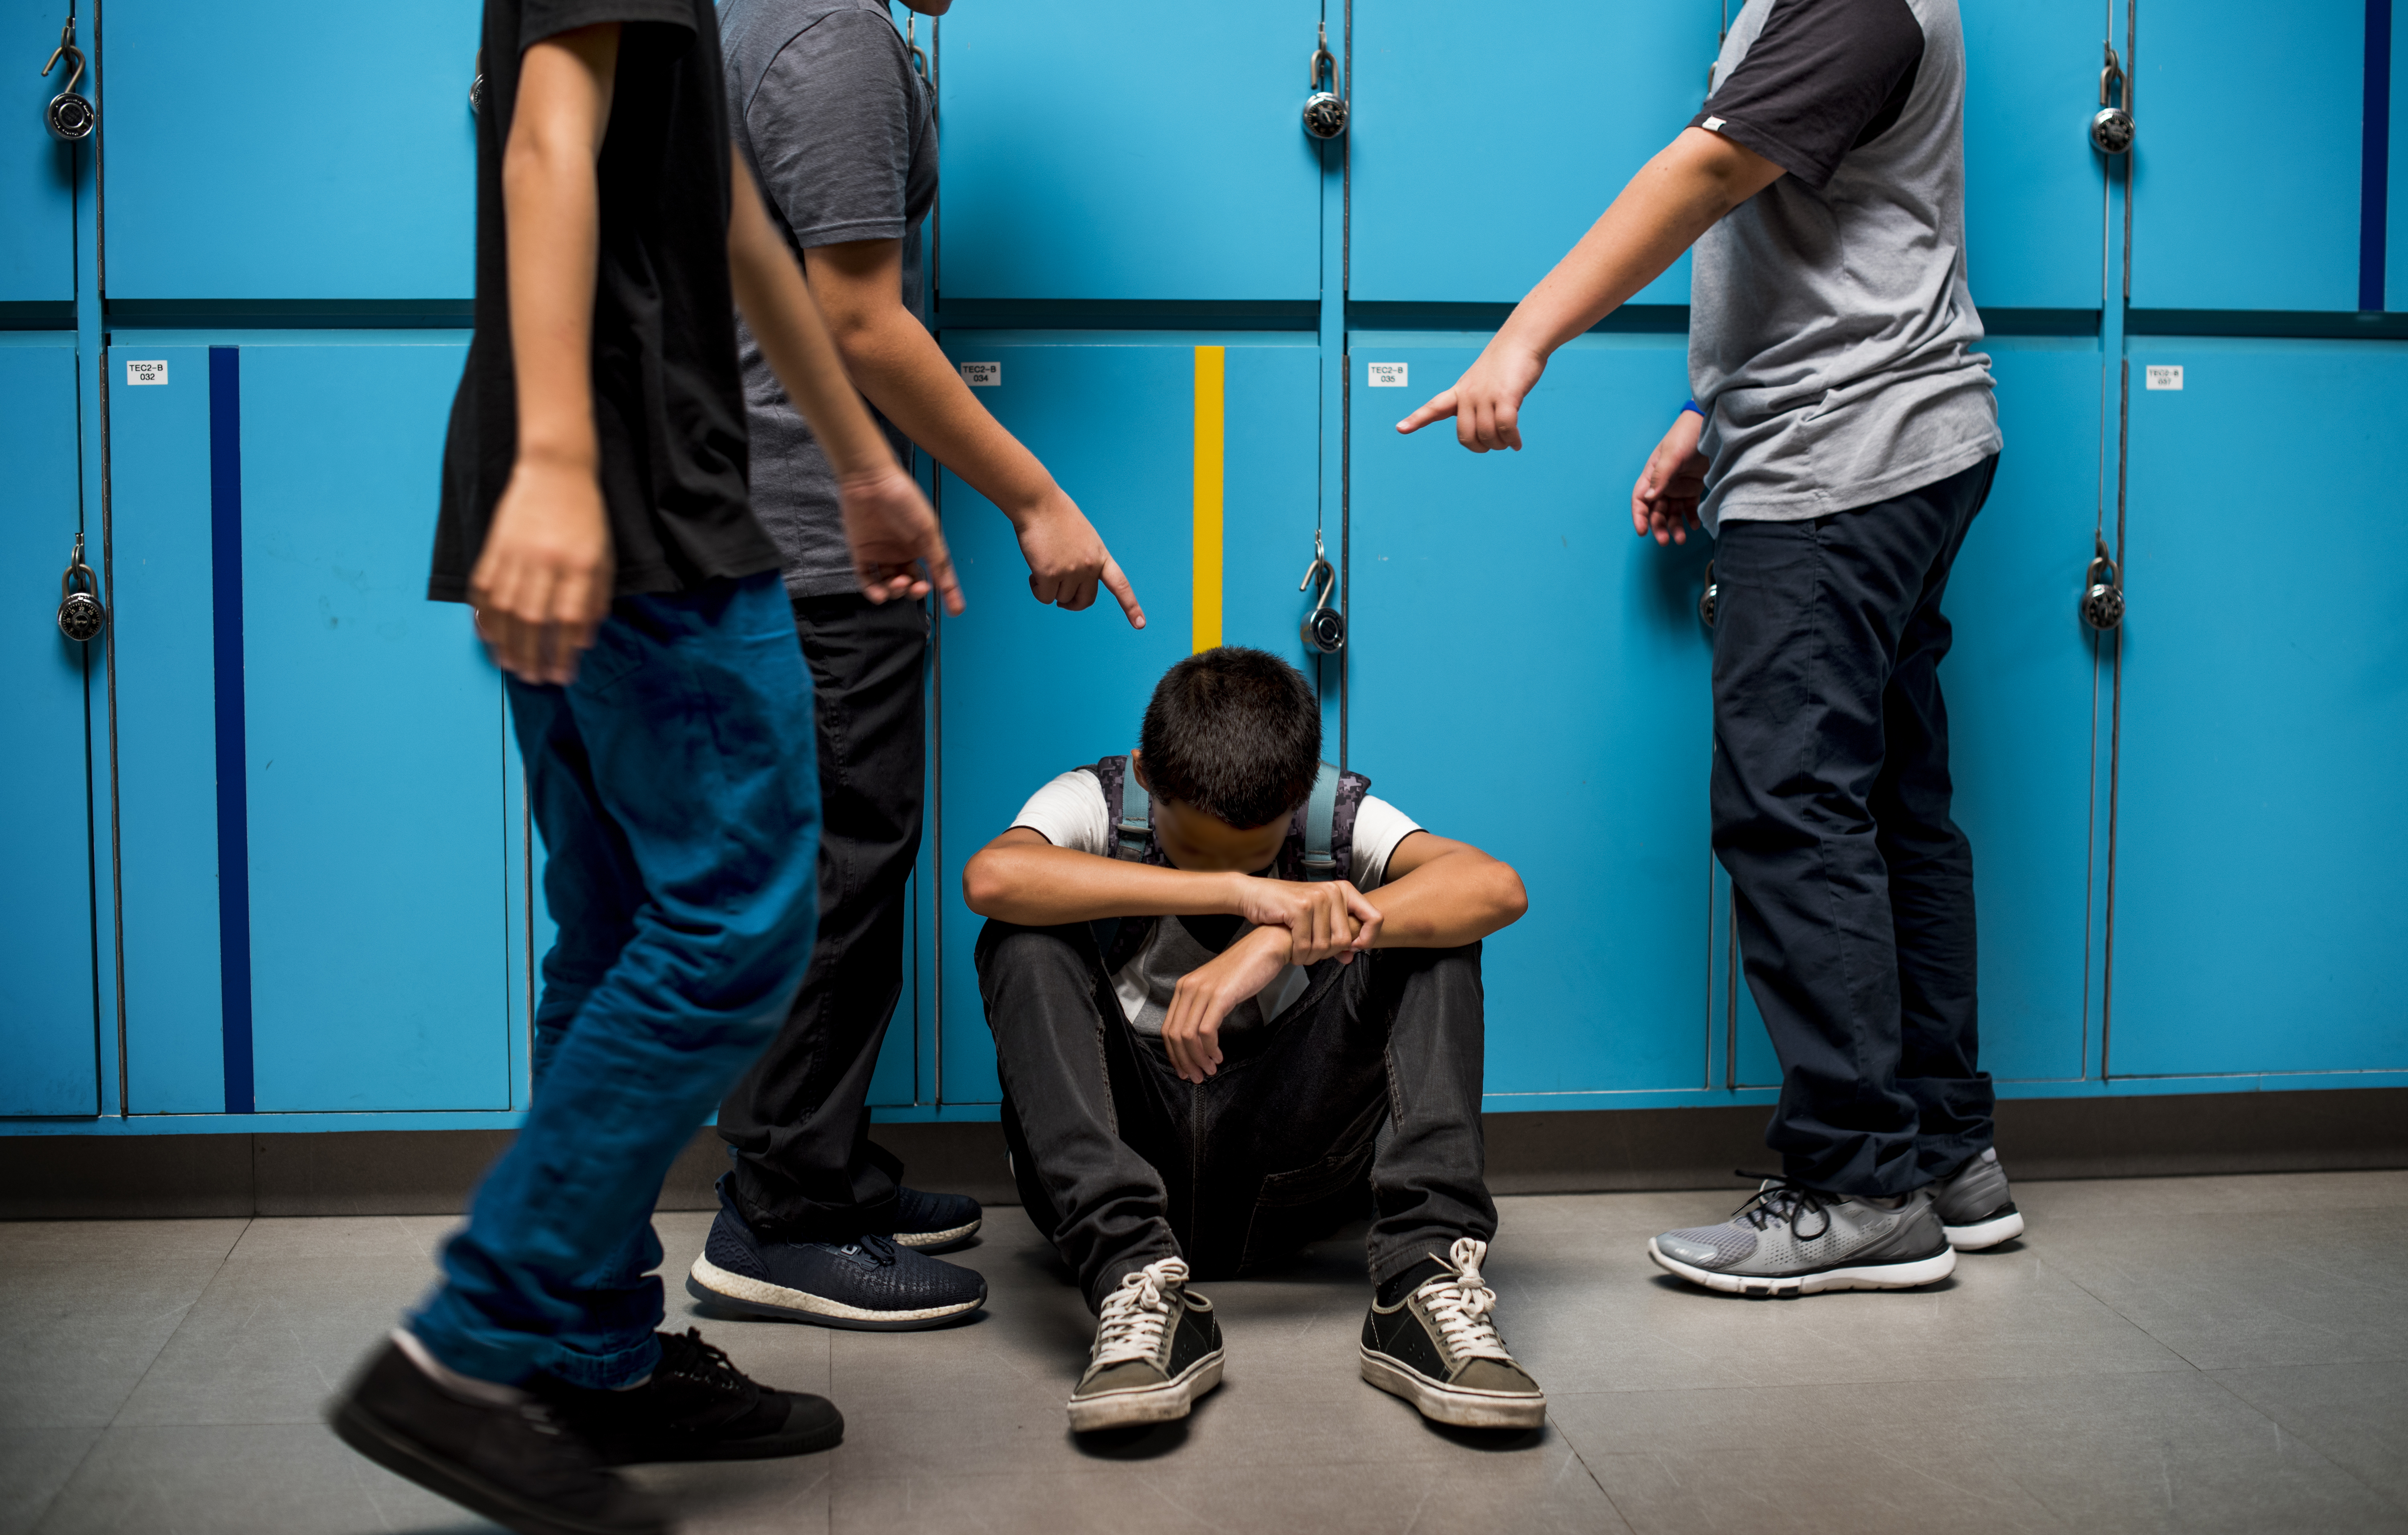 El acoso escolar se da en todos los niveles. Las víctimas pueden sufrir de agresión verbal, física y emocional, y esto afectar su comportamiento y rendimiento escolar. (Foto Prensa Libre: Servicios) 